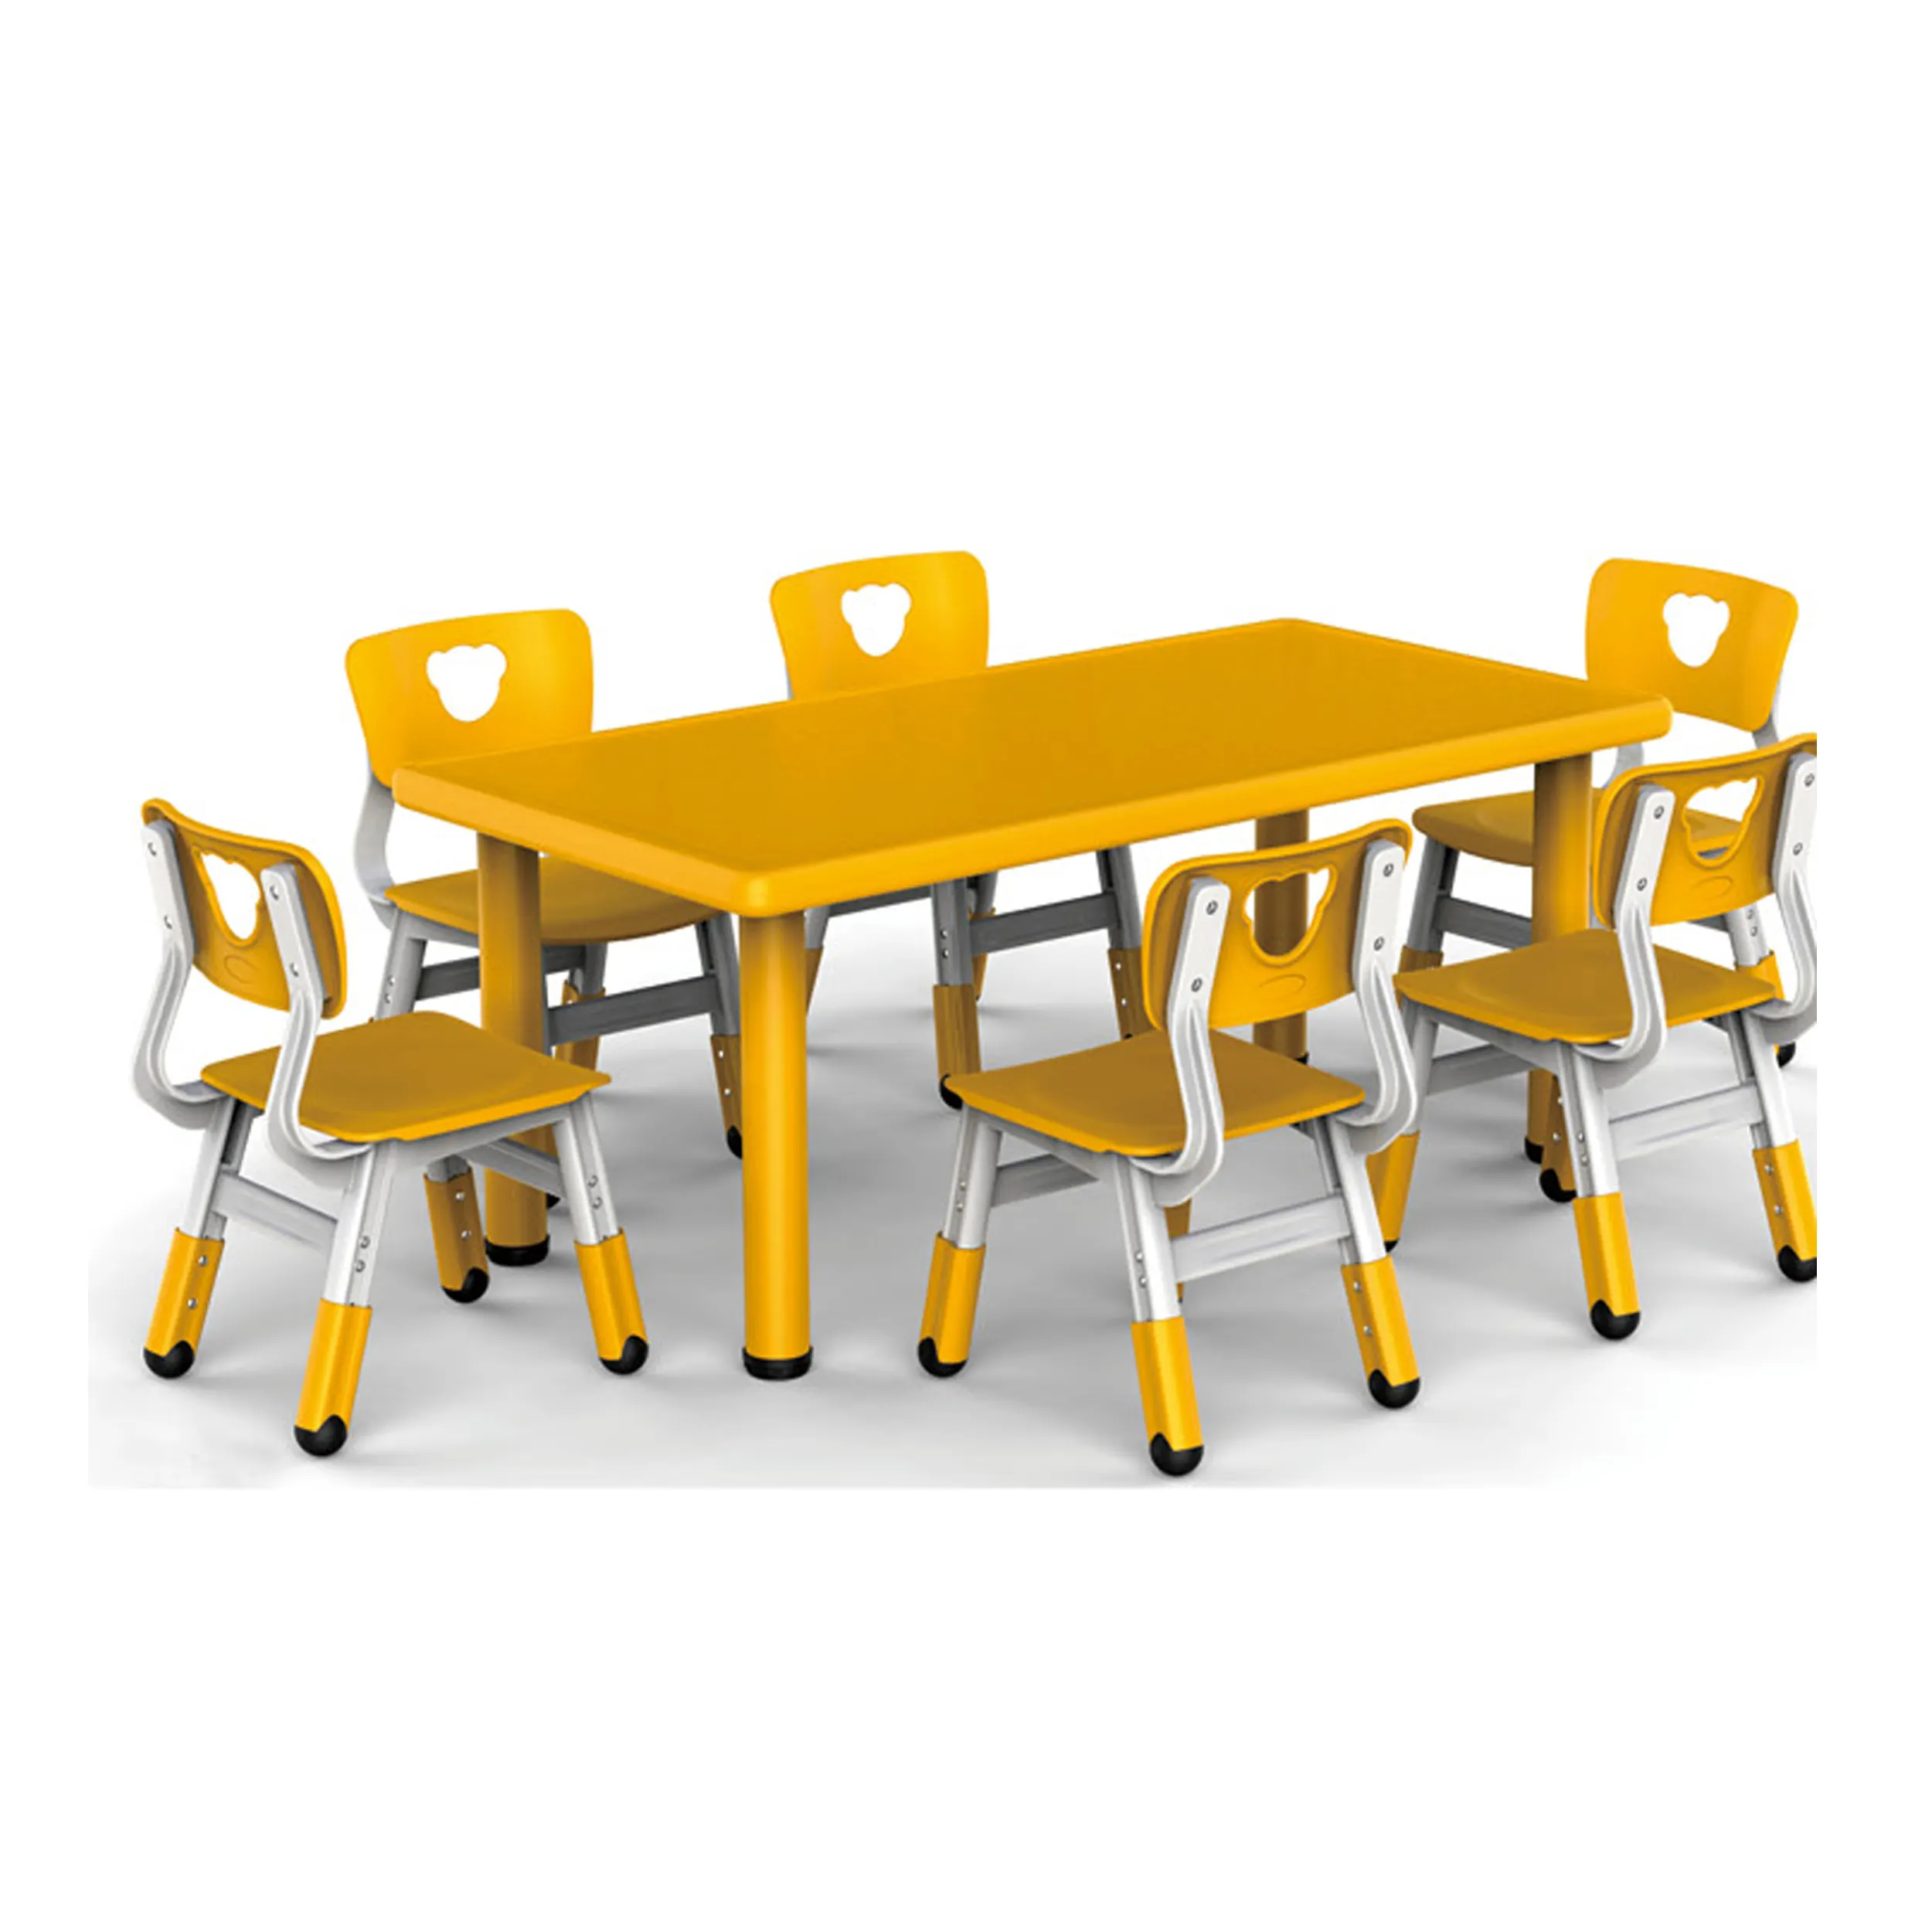 Vente en gros de meubles pour enfants d'âge préscolaire bon marché Table et chaises et tables en plastique Mobilier scolaire d'occasion à vendre Film plastique moderne